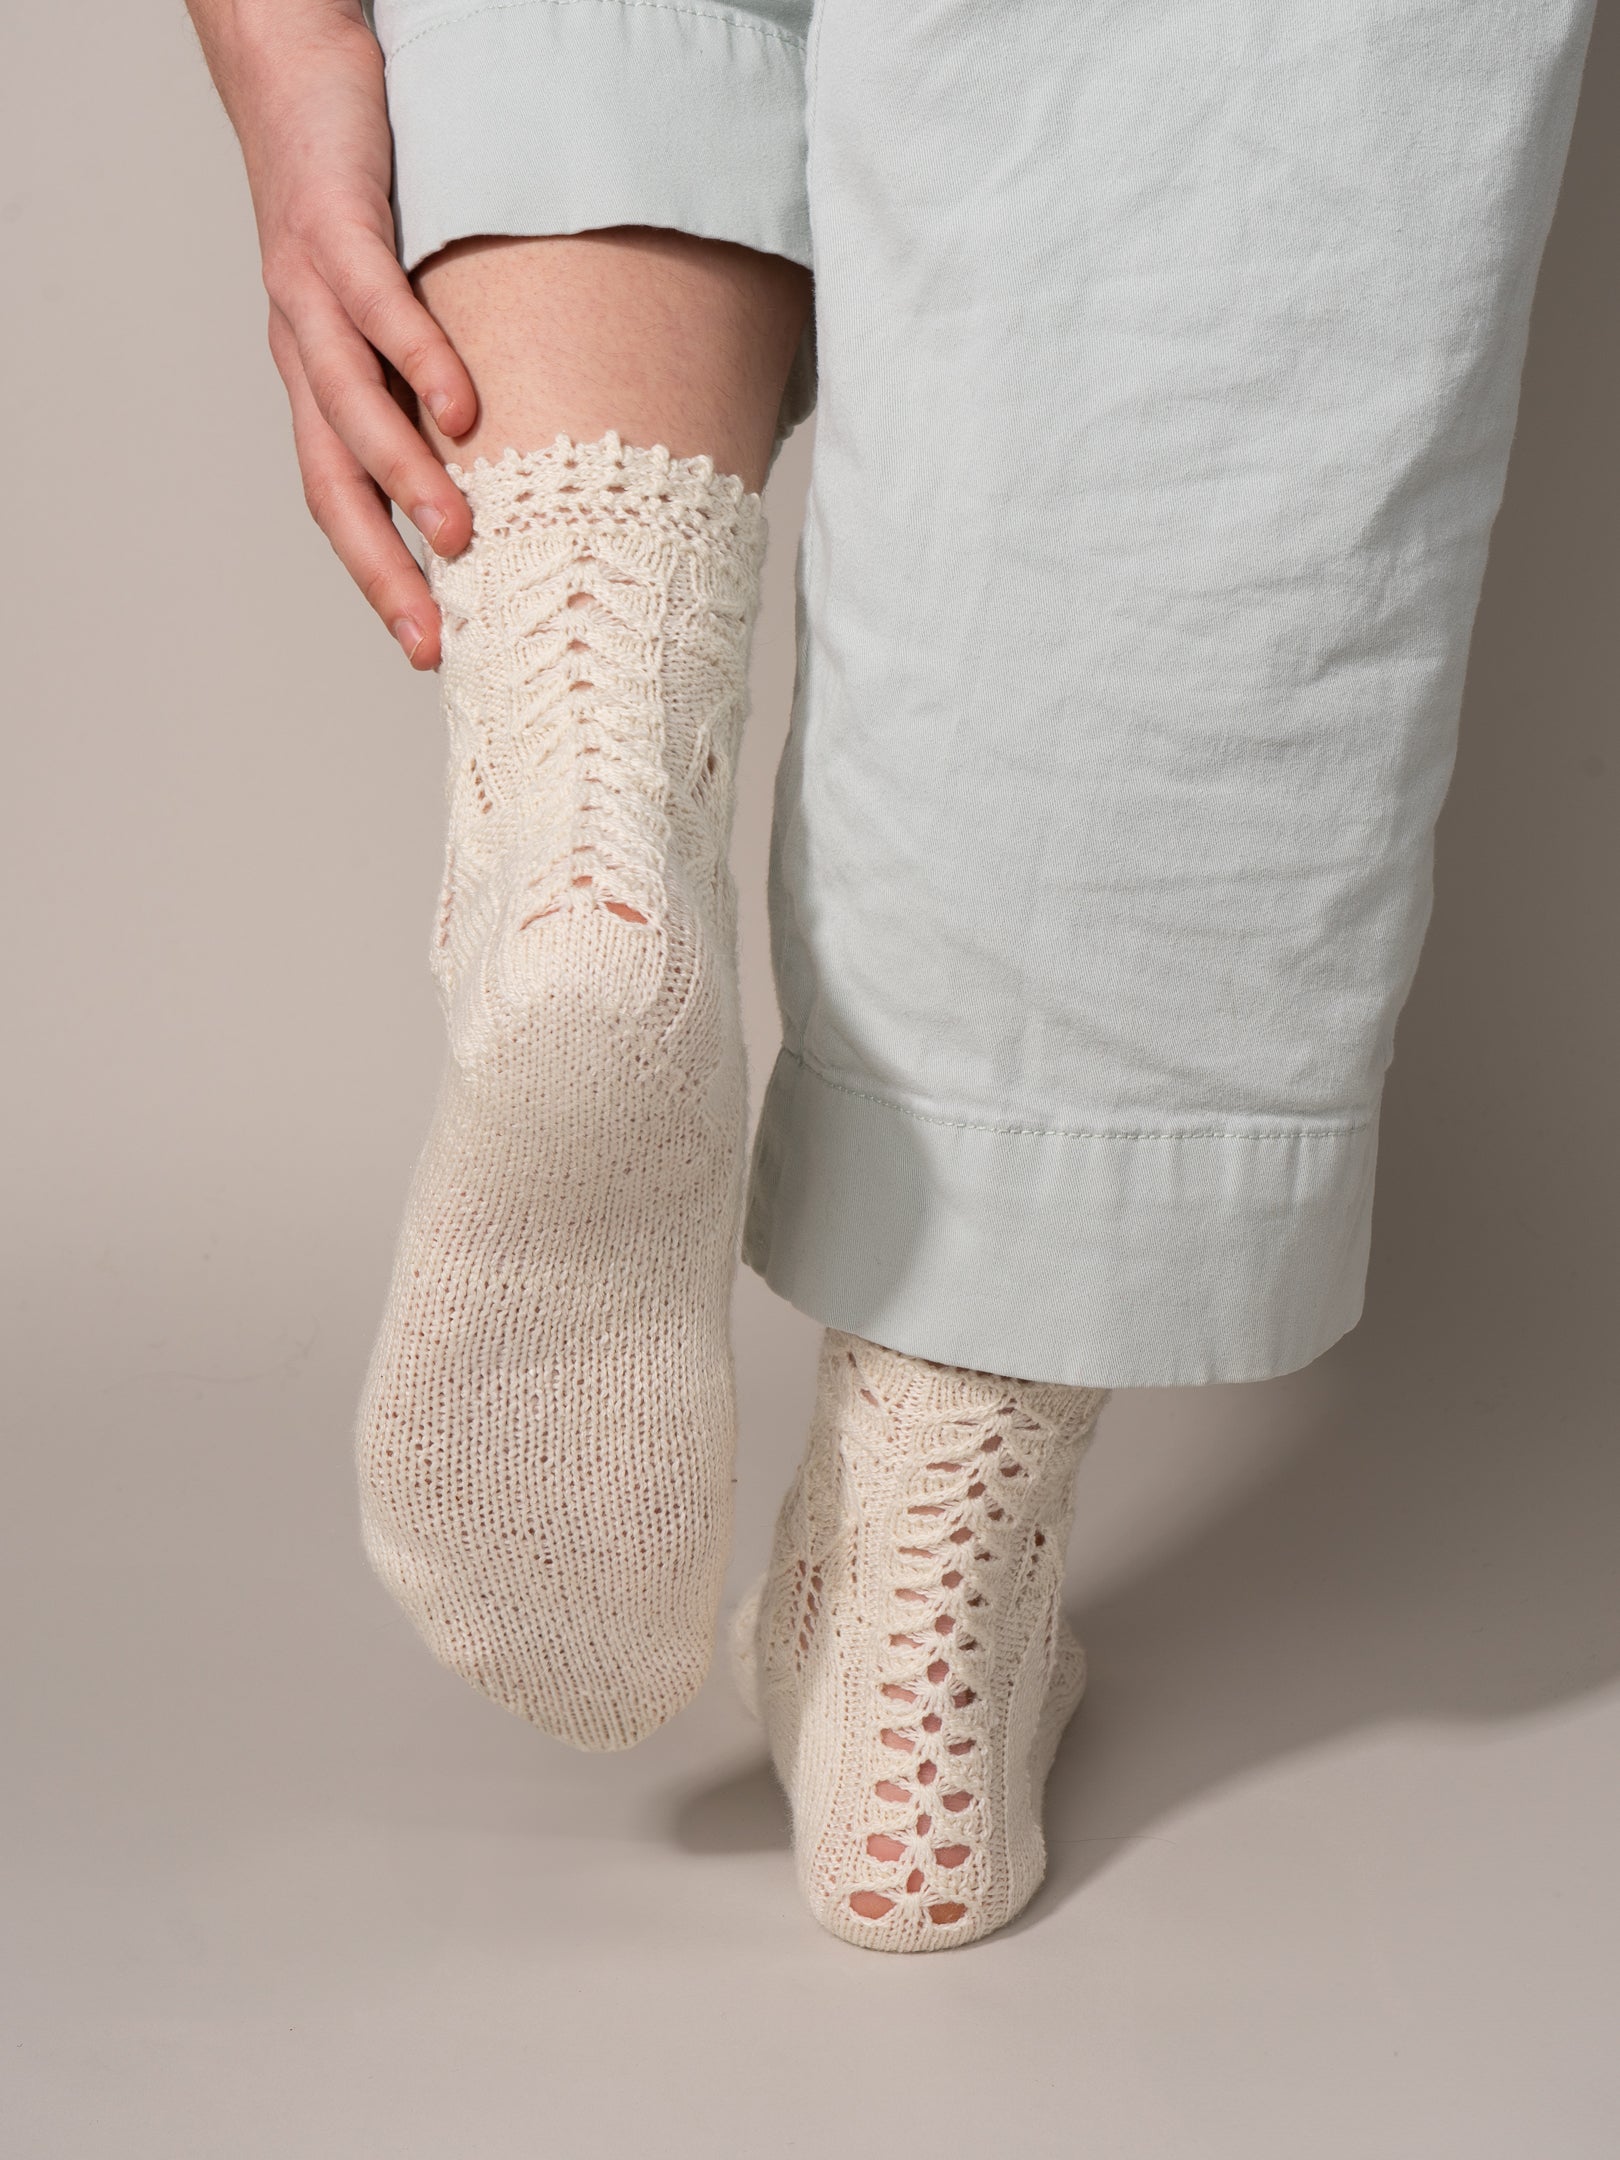 Marie Antoinette socks